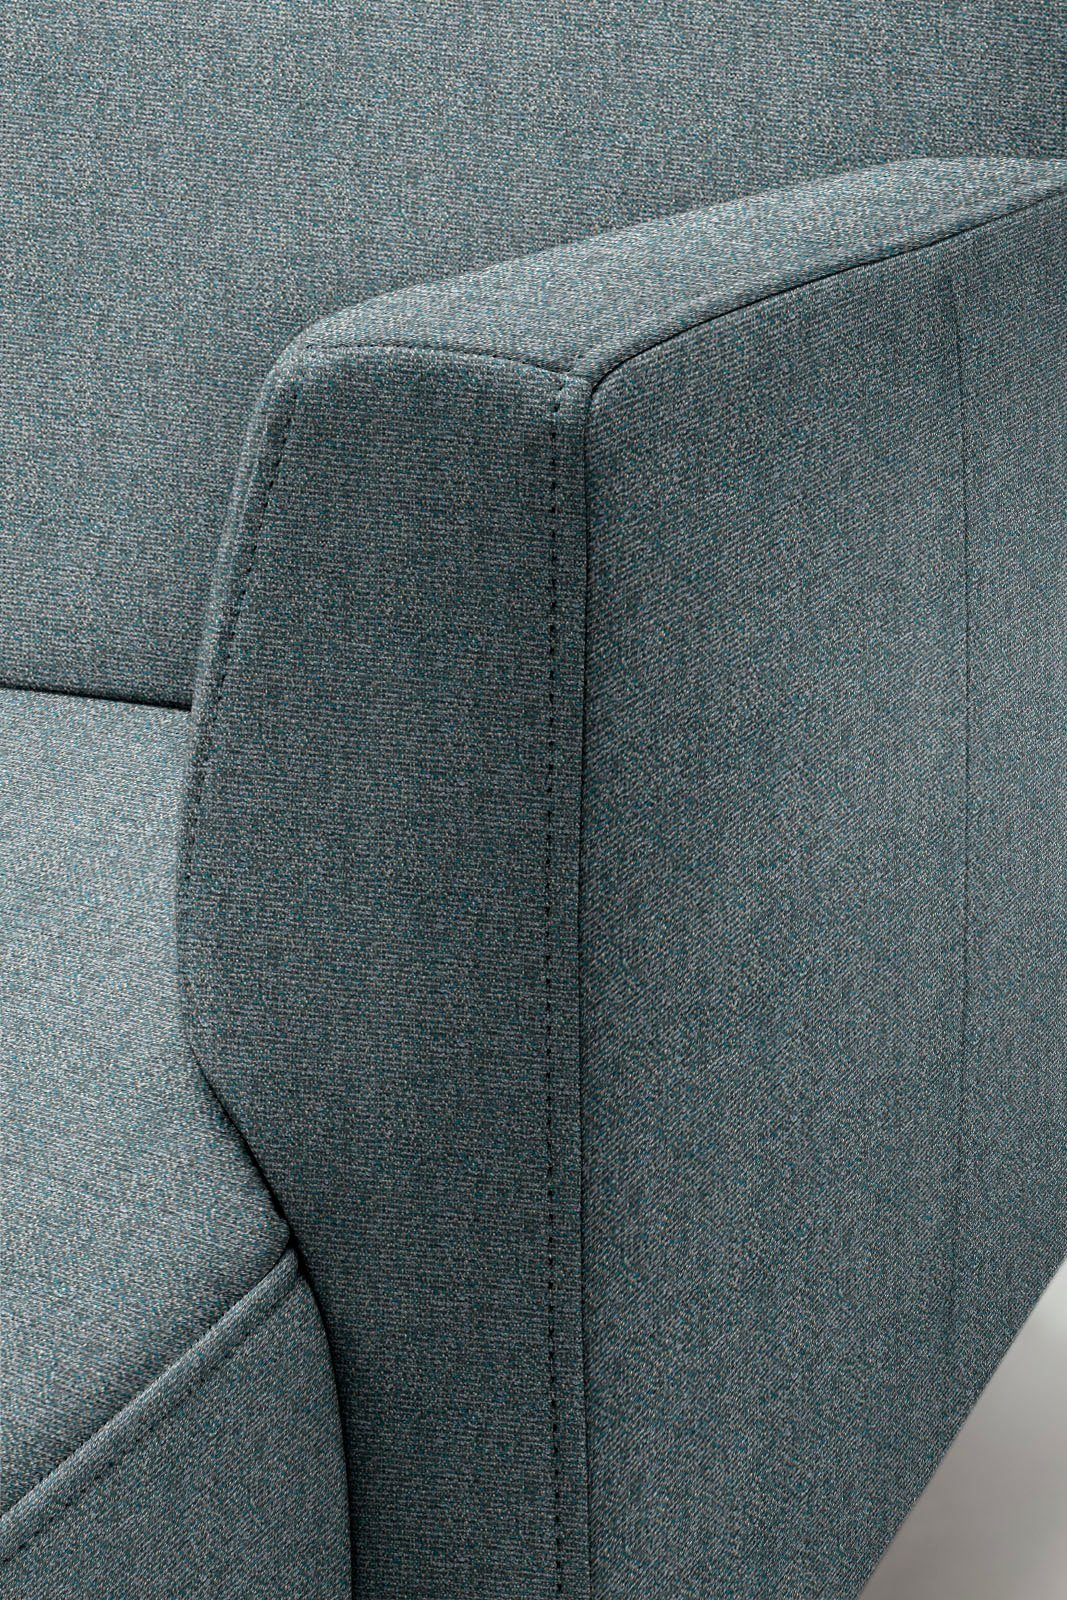 Breite in 317 Ecksofa Optik, hs.446, cm minimalistischer, schwereloser hülsta sofa